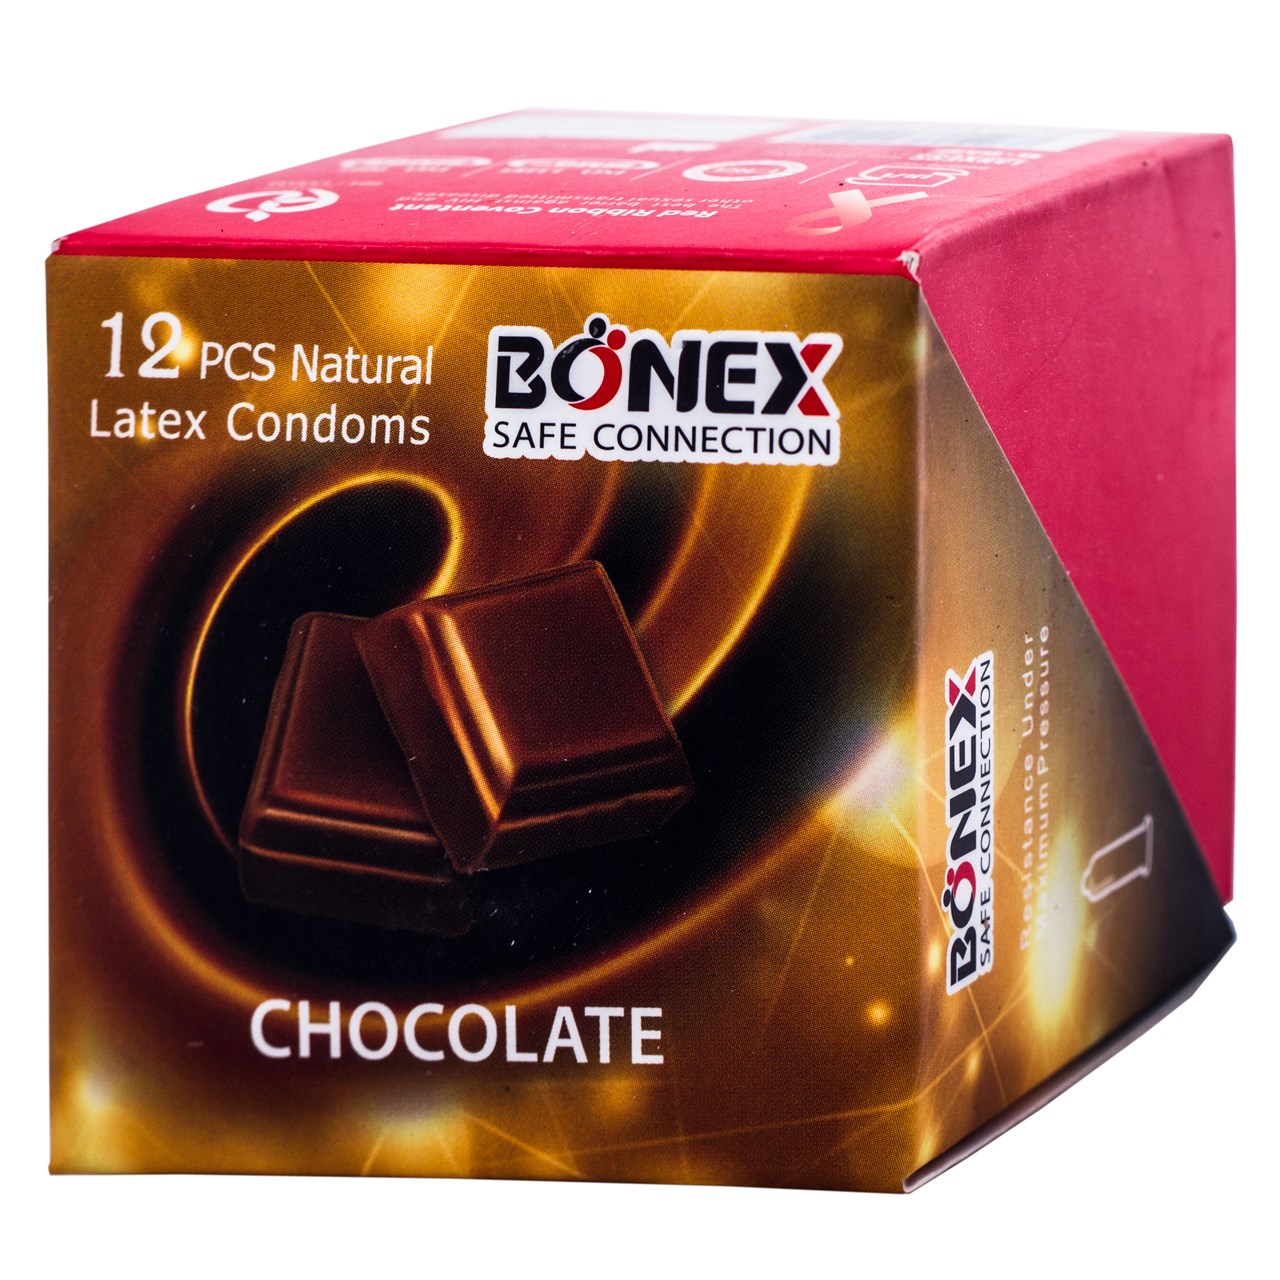 کاندوم بونکس مدل chcolate بسته 12 عددی